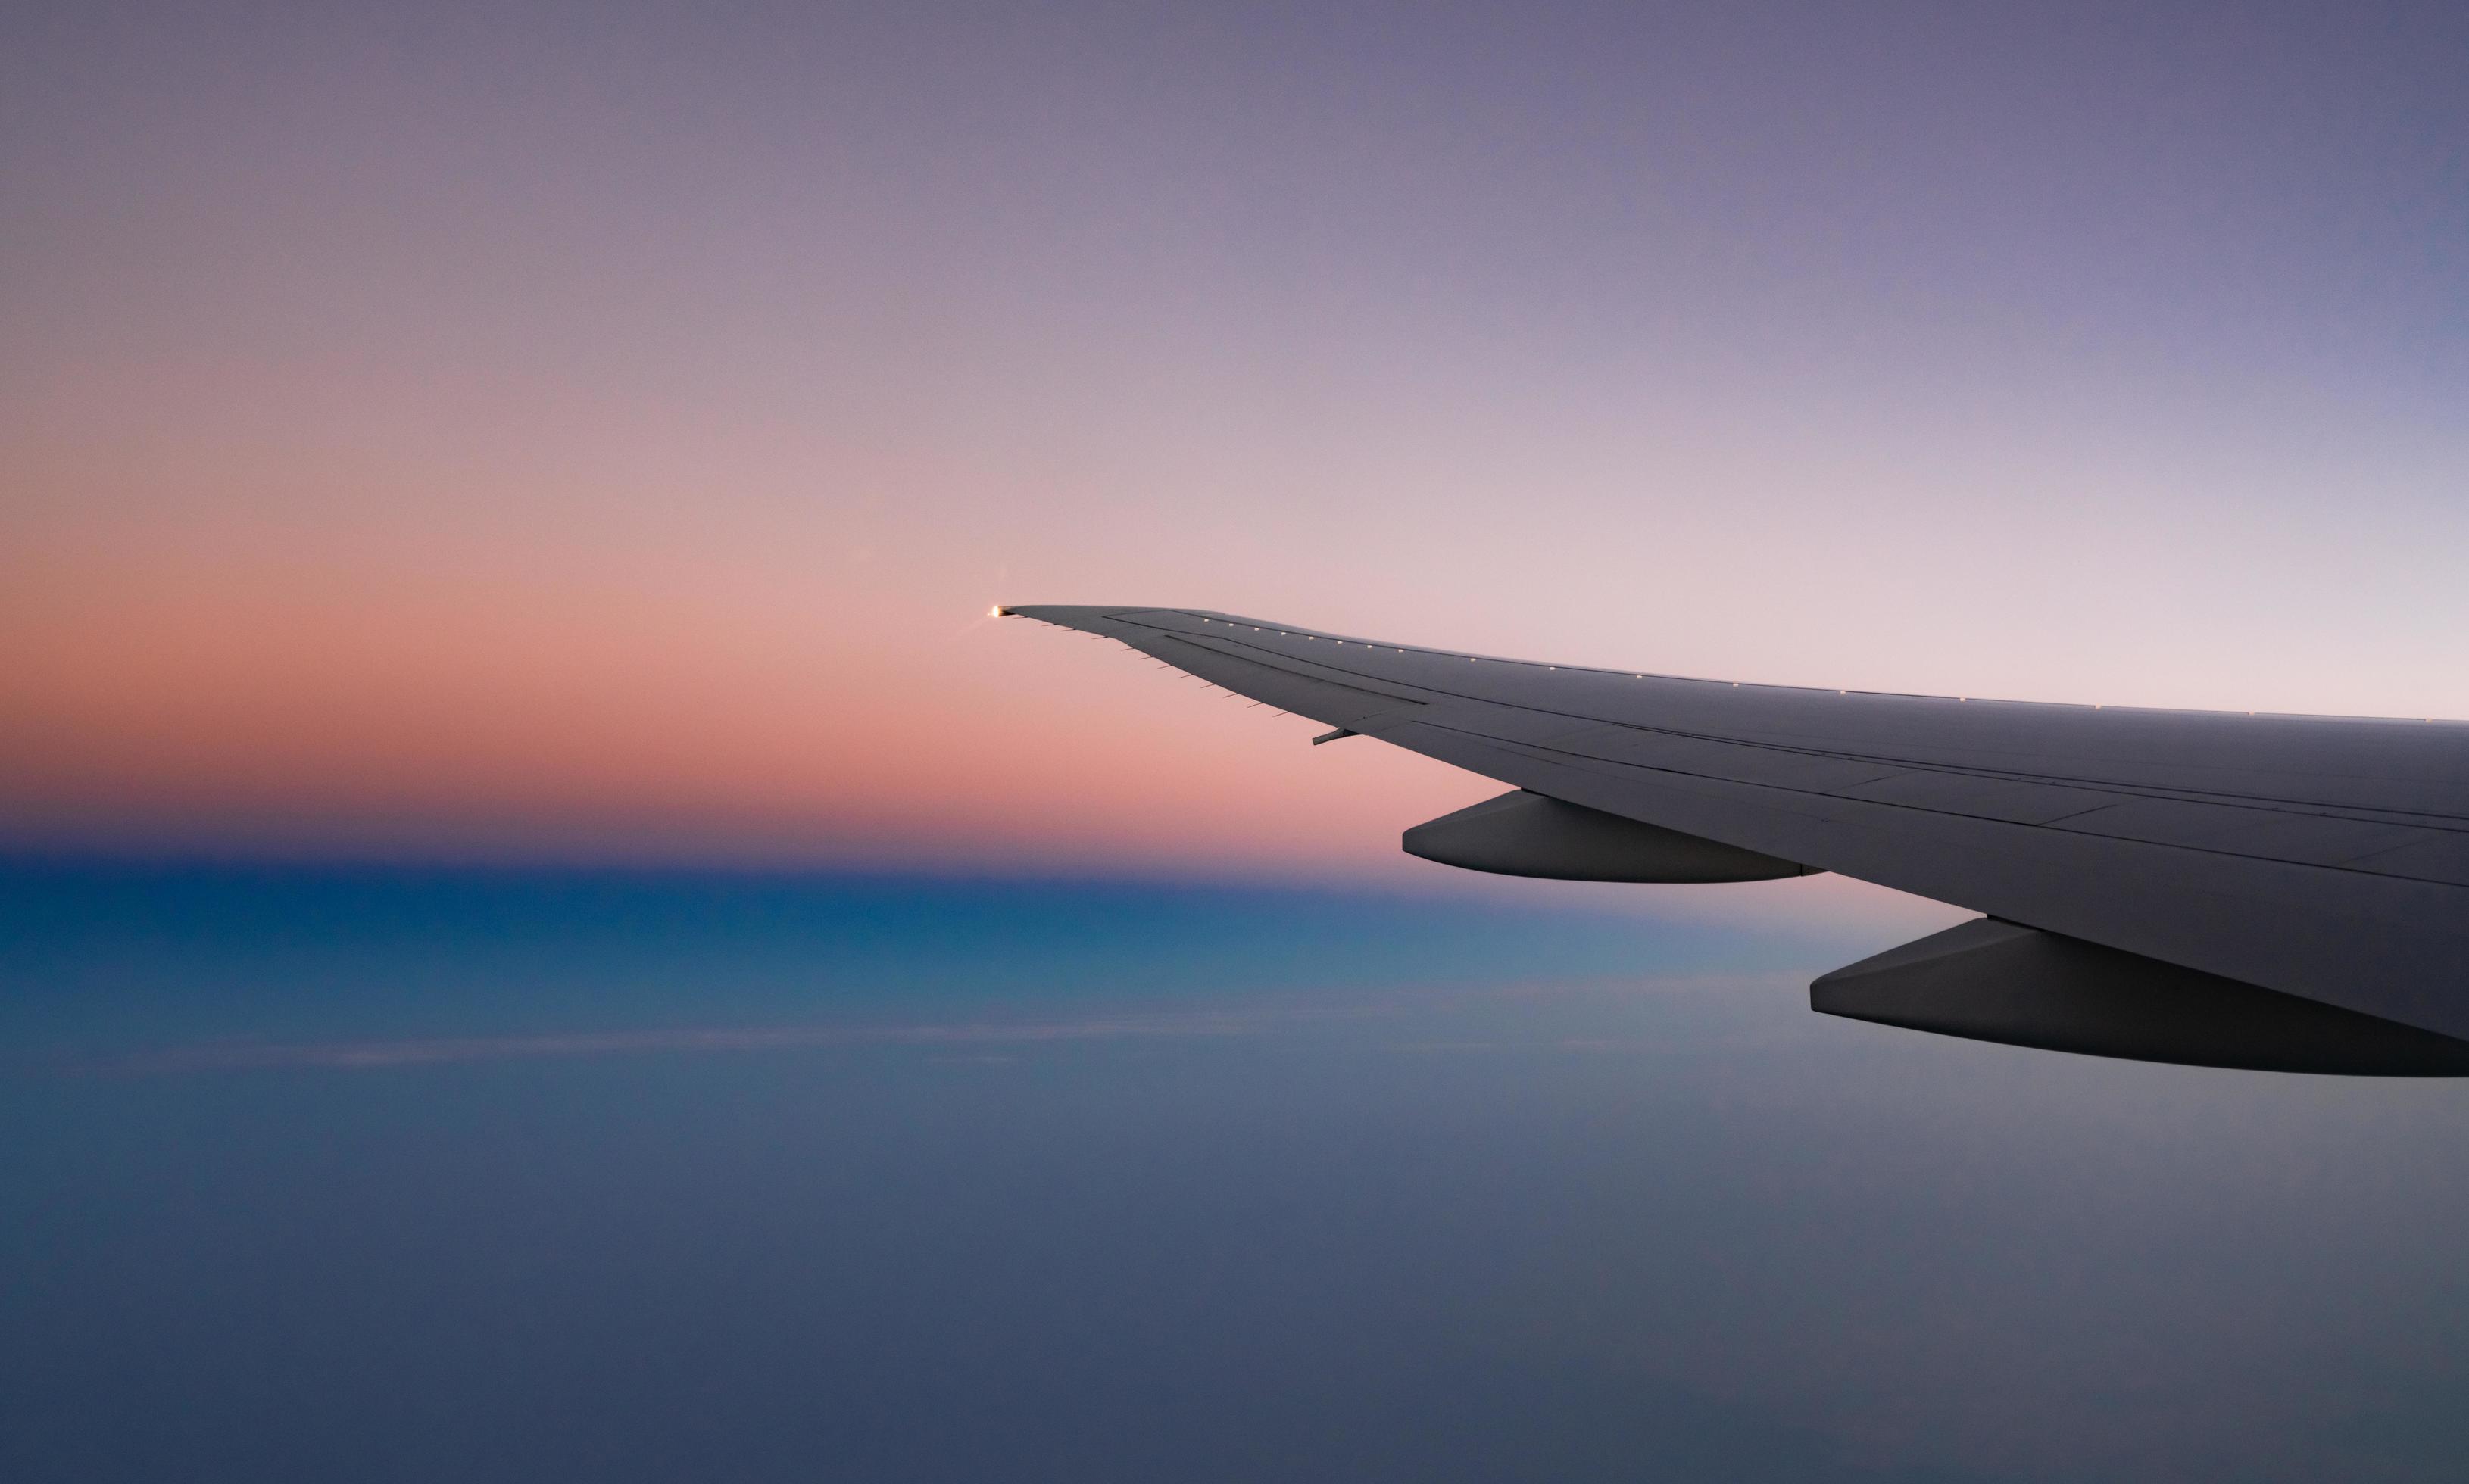 breng de actie Clam span vleugel van vliegtuig met prachtige zonsopgang skyline. vliegtuig dat op  blauwe, paarse, oranje lucht vliegt. uitzicht vanuit vliegtuig raam.  commerciële luchtvaartmaatschappij vlucht in de ochtend met zonlicht.  vliegtuigvleugel boven wolken. 7789618 ...